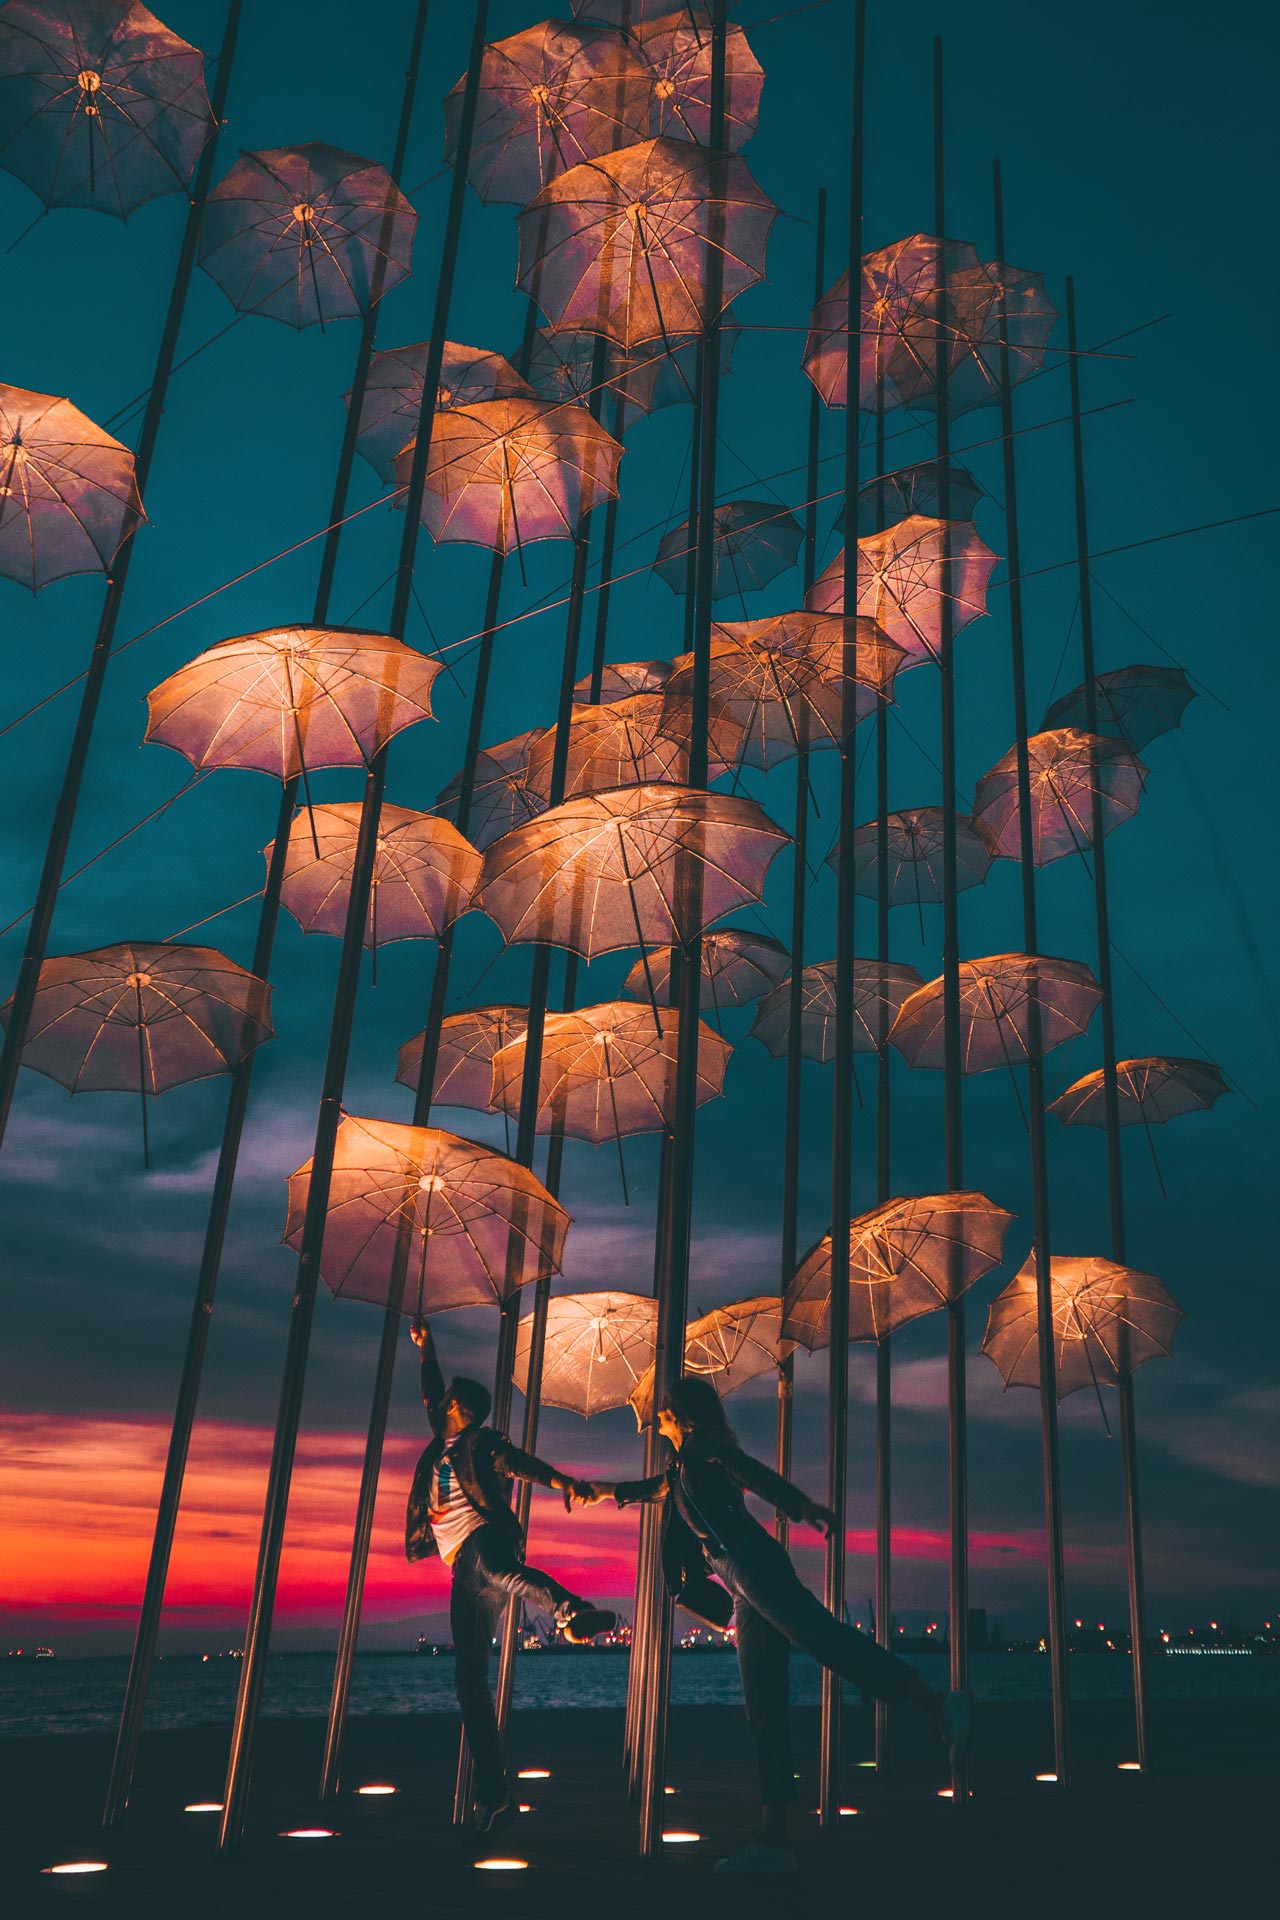 Οι ομπρέλες του Ζογγολόπουλου - Αγαπημένο σημείο για ηλιοβασίλεμα